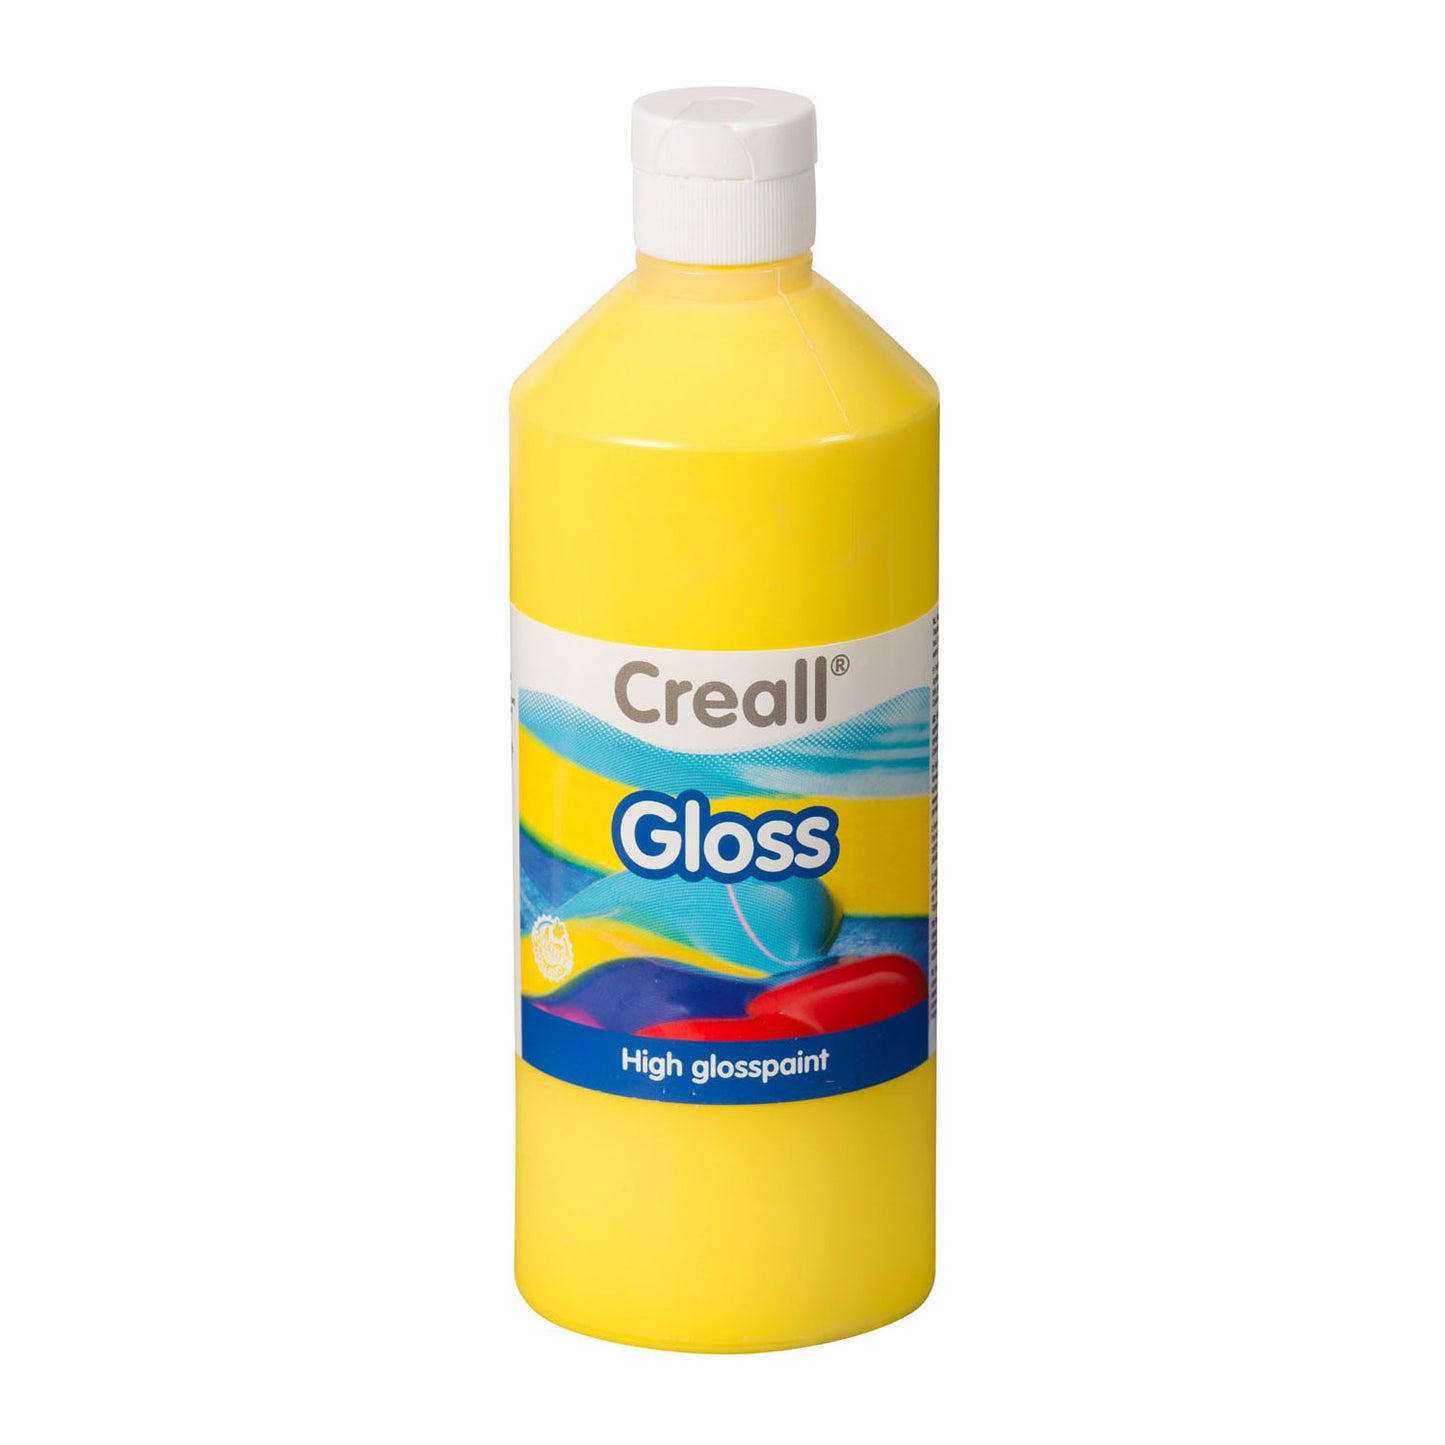 Creall Gloss Glase Pail Yellow, 500 ml